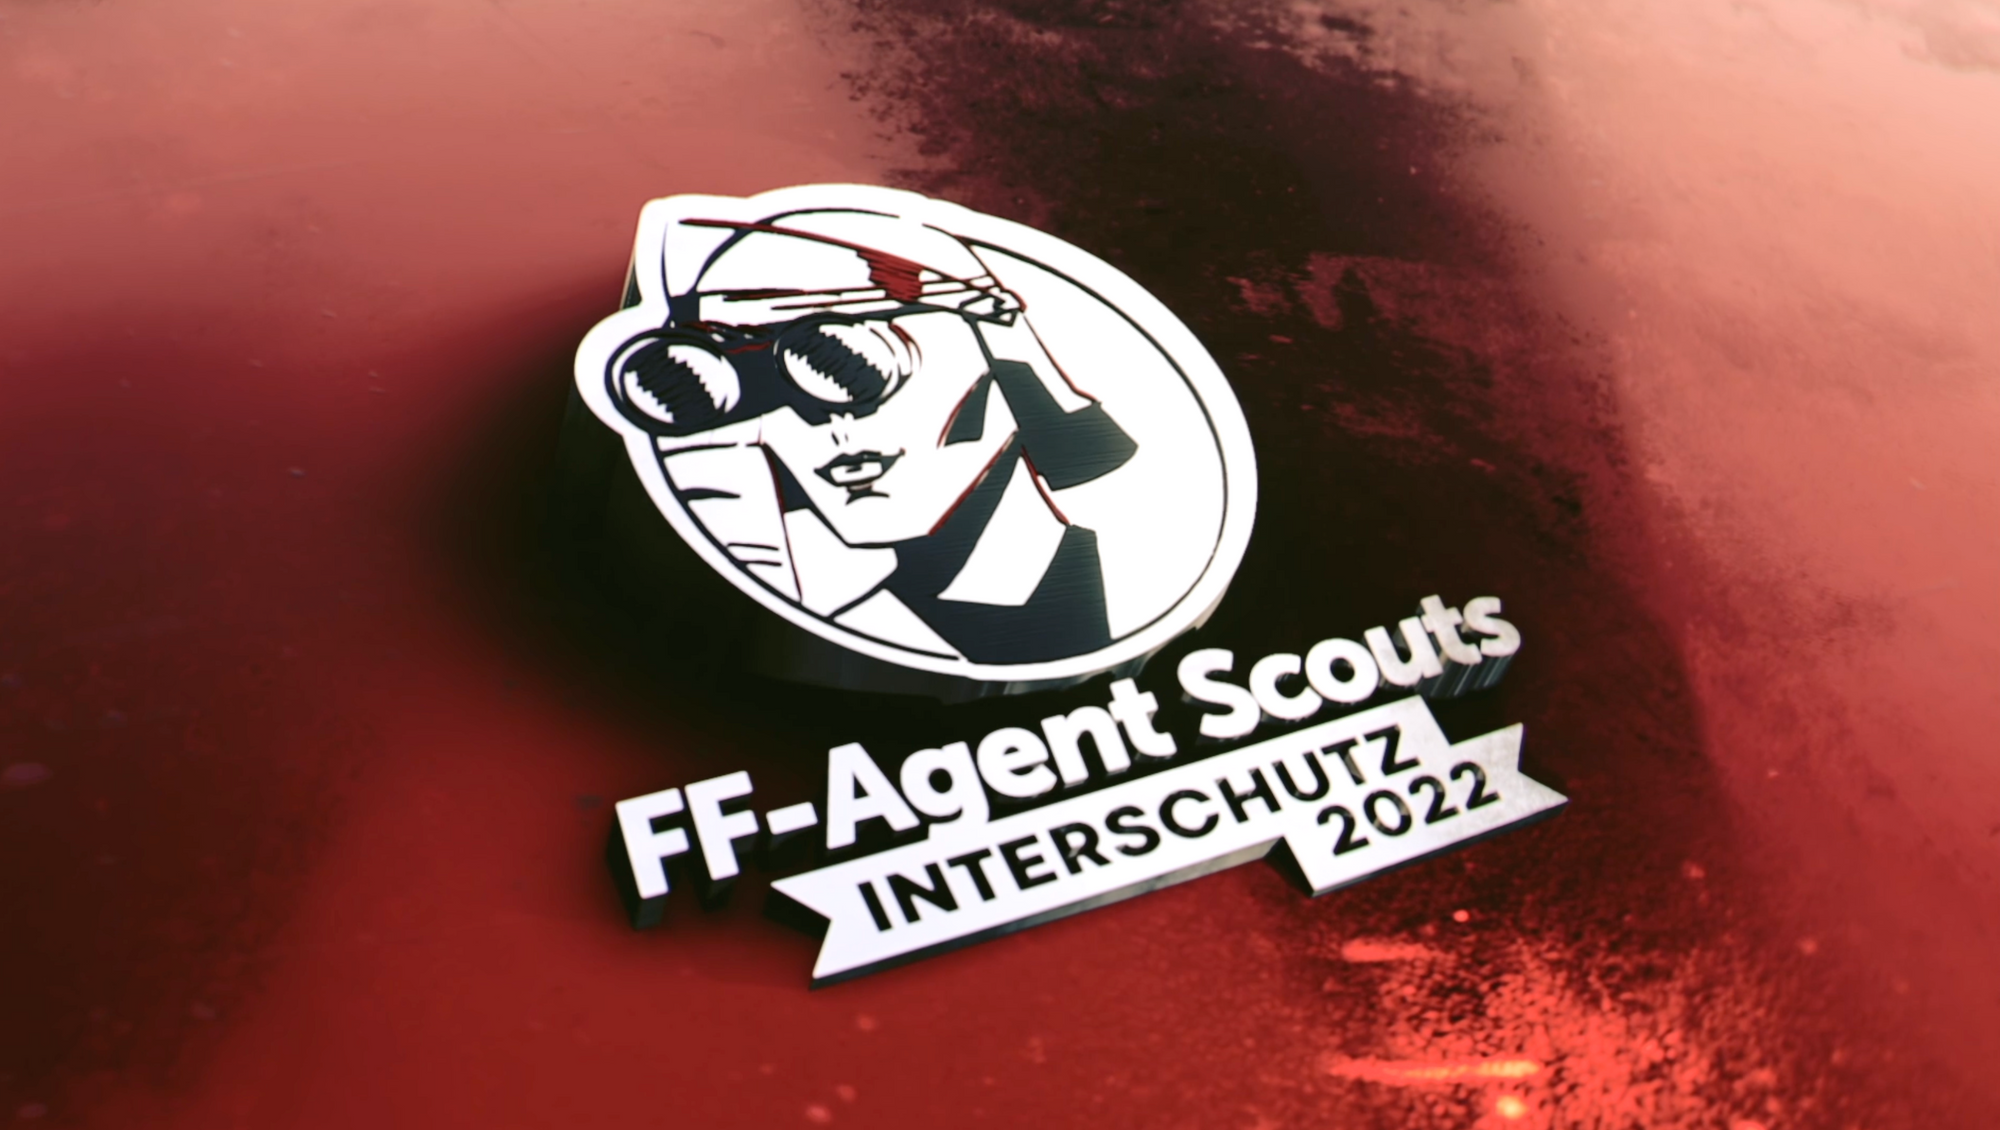 FF-Agent Scouts auf der Interschutz 2022